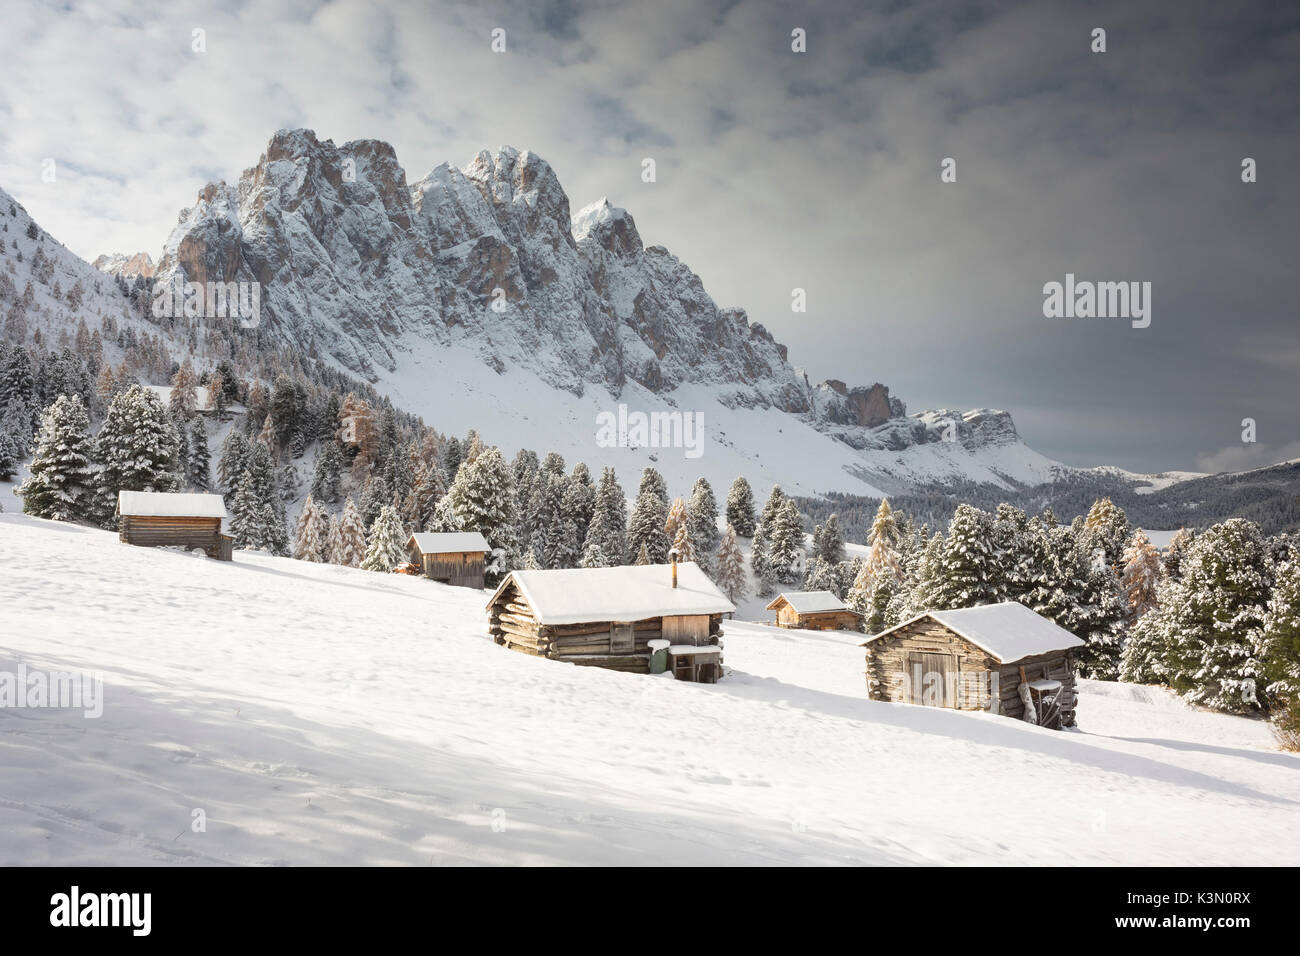 Ein Winter Blick auf den Naturpark Puez Geisler in Villnöss mit einigen Hütten im Vordergrund und im Hintergrund die Geisler, Provinz Bozen, Südtirol, Trentino Alto Adige, Italien, Europa Stockfoto